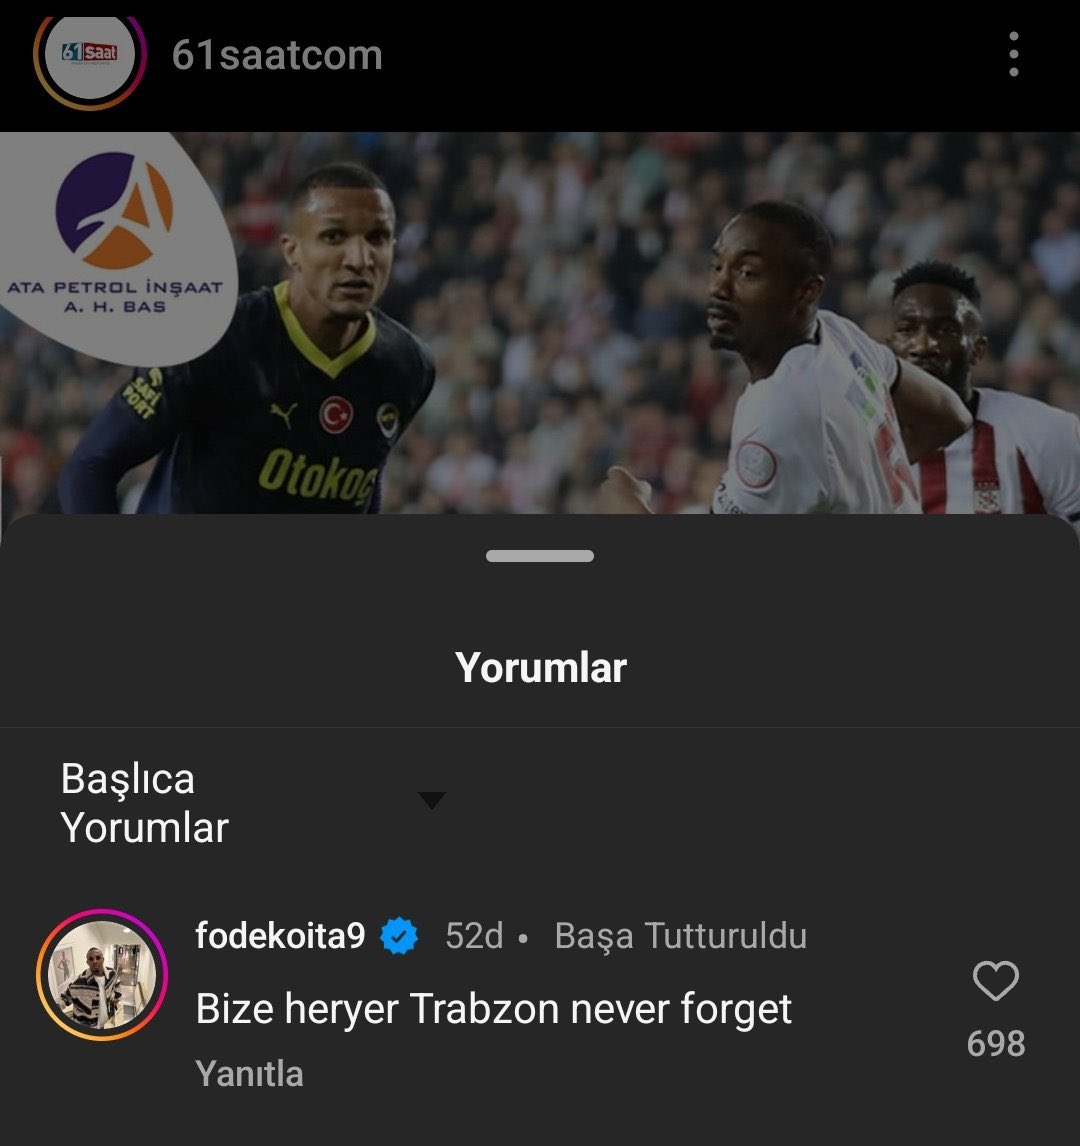 iki sezon oynamadan para aldı diye kızıyorduk. Meğer adam gibi adammış.. Bir başka yerde Trabzonspor için atmaya devam ediyor..